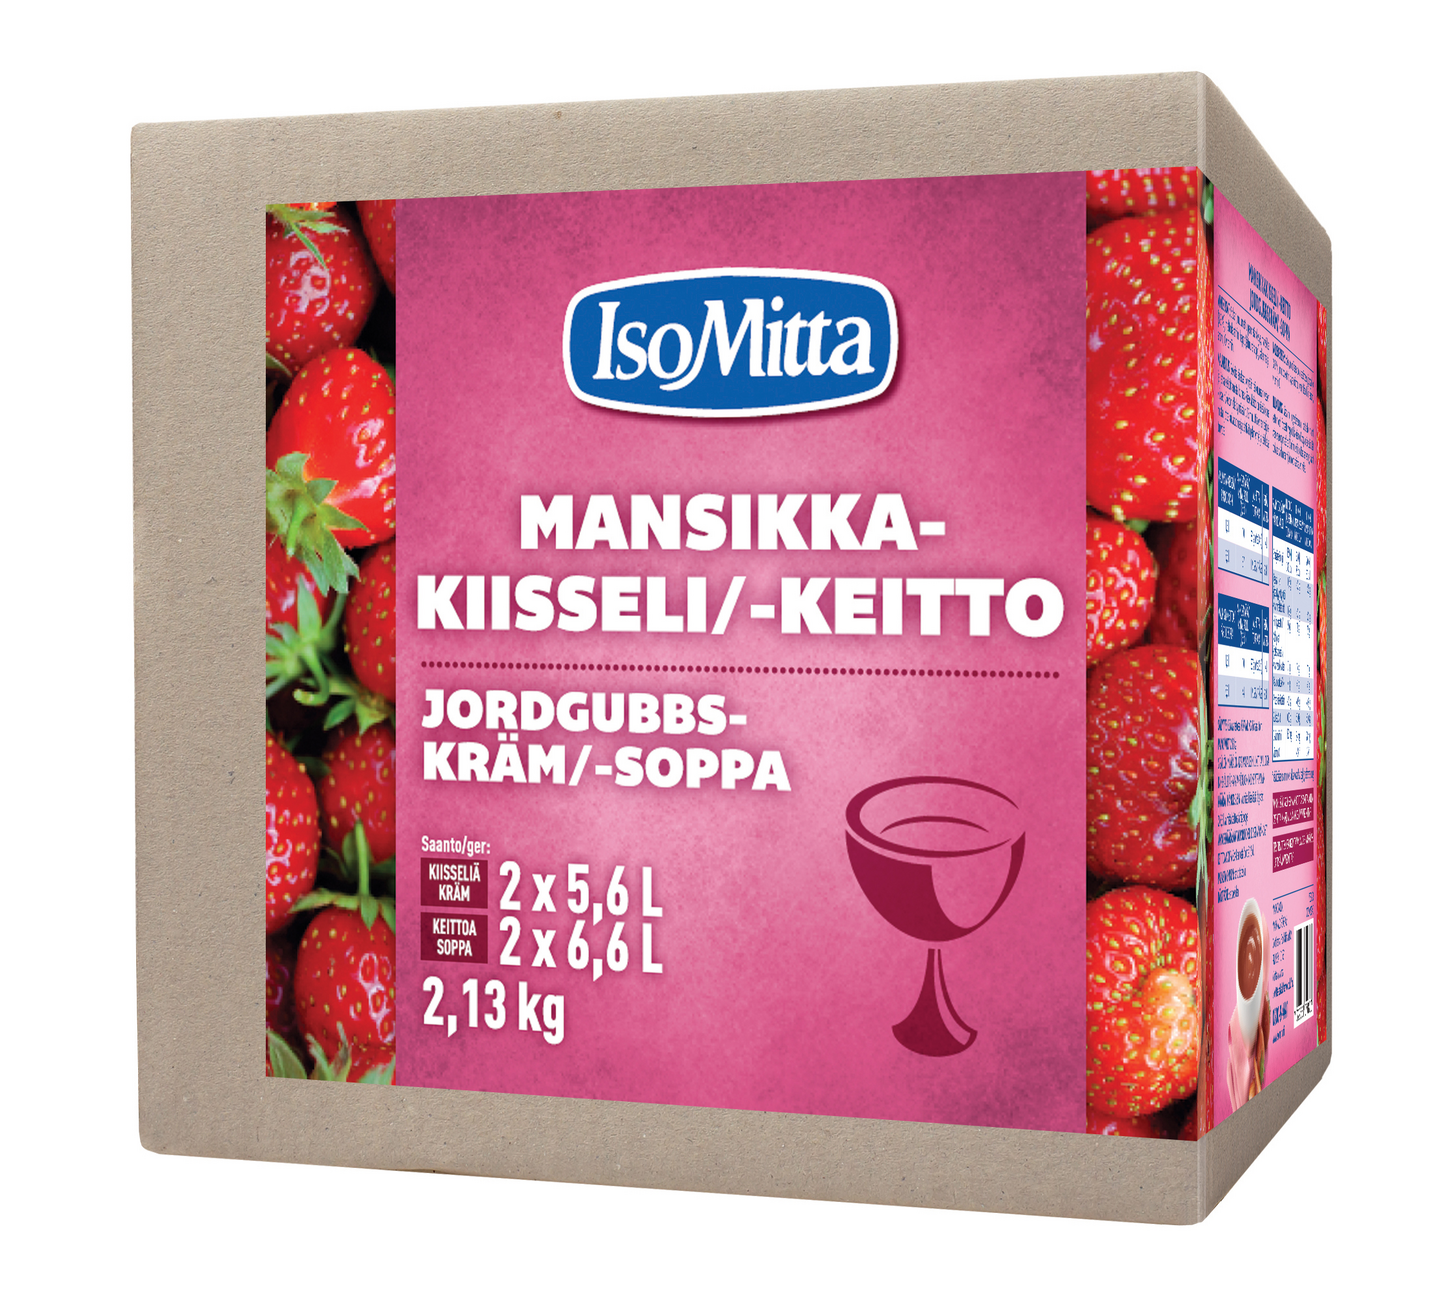 IsoMitta Mansikkakiisseli/-keitto 2x1065g